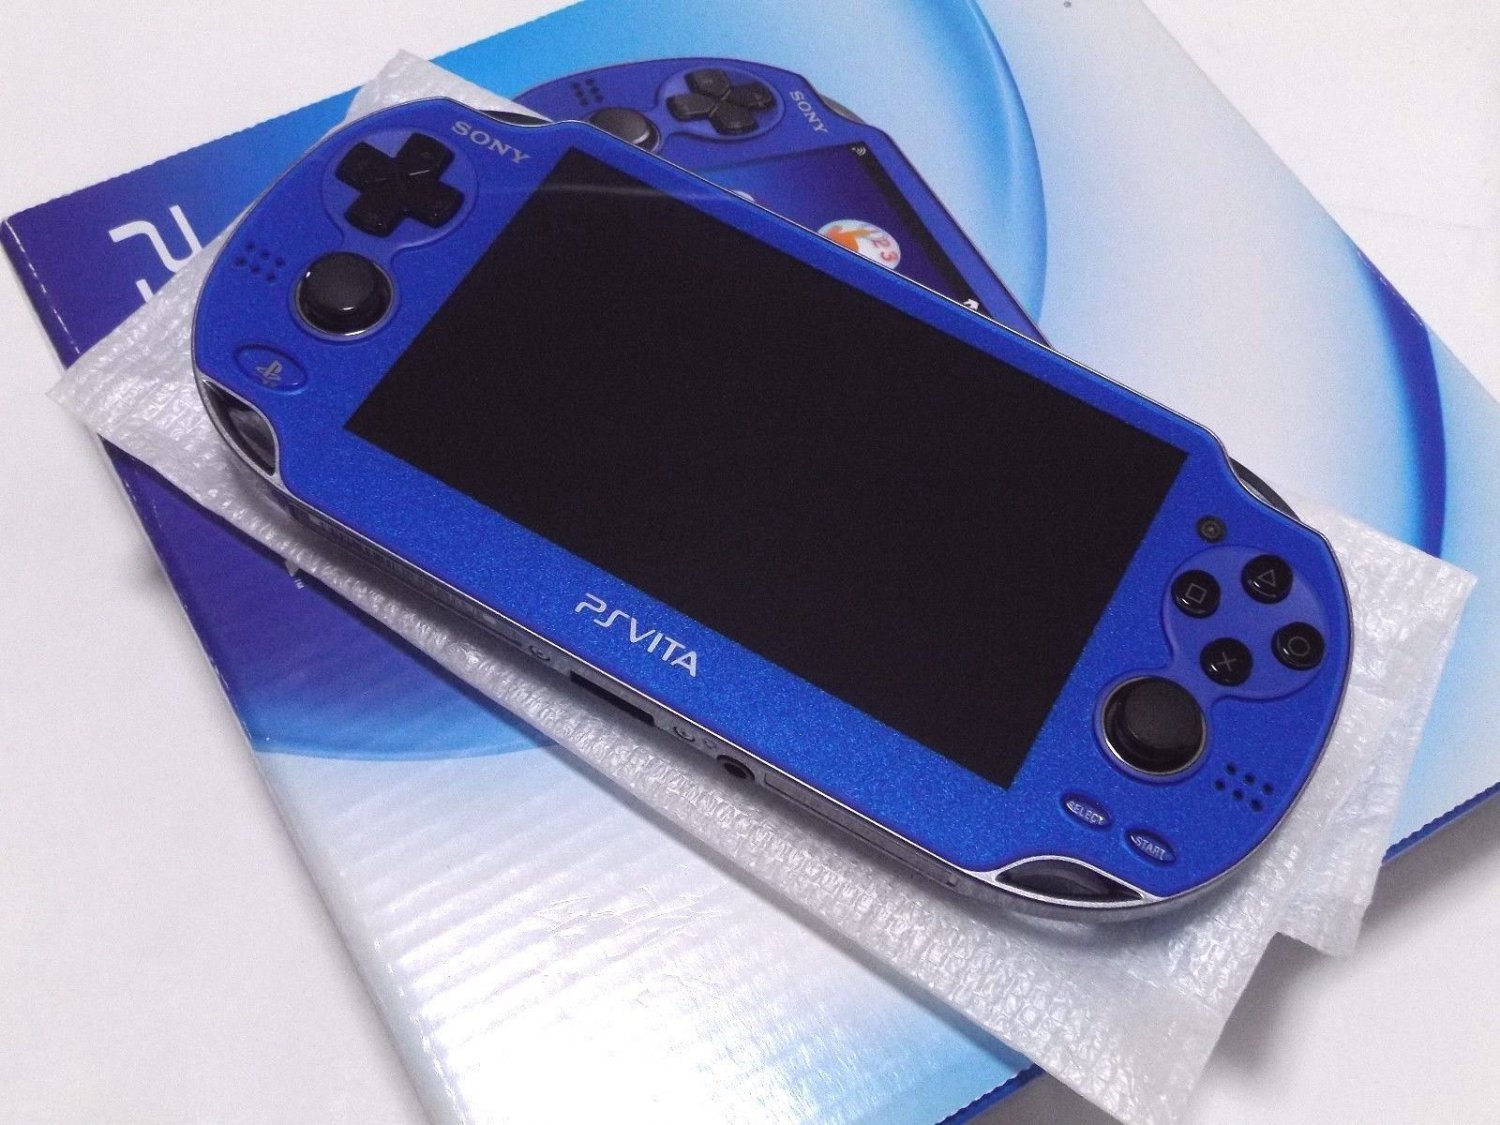 Sale Sony Ps Vita Pch 1000 Za04 Blue Wi Fi Model Console